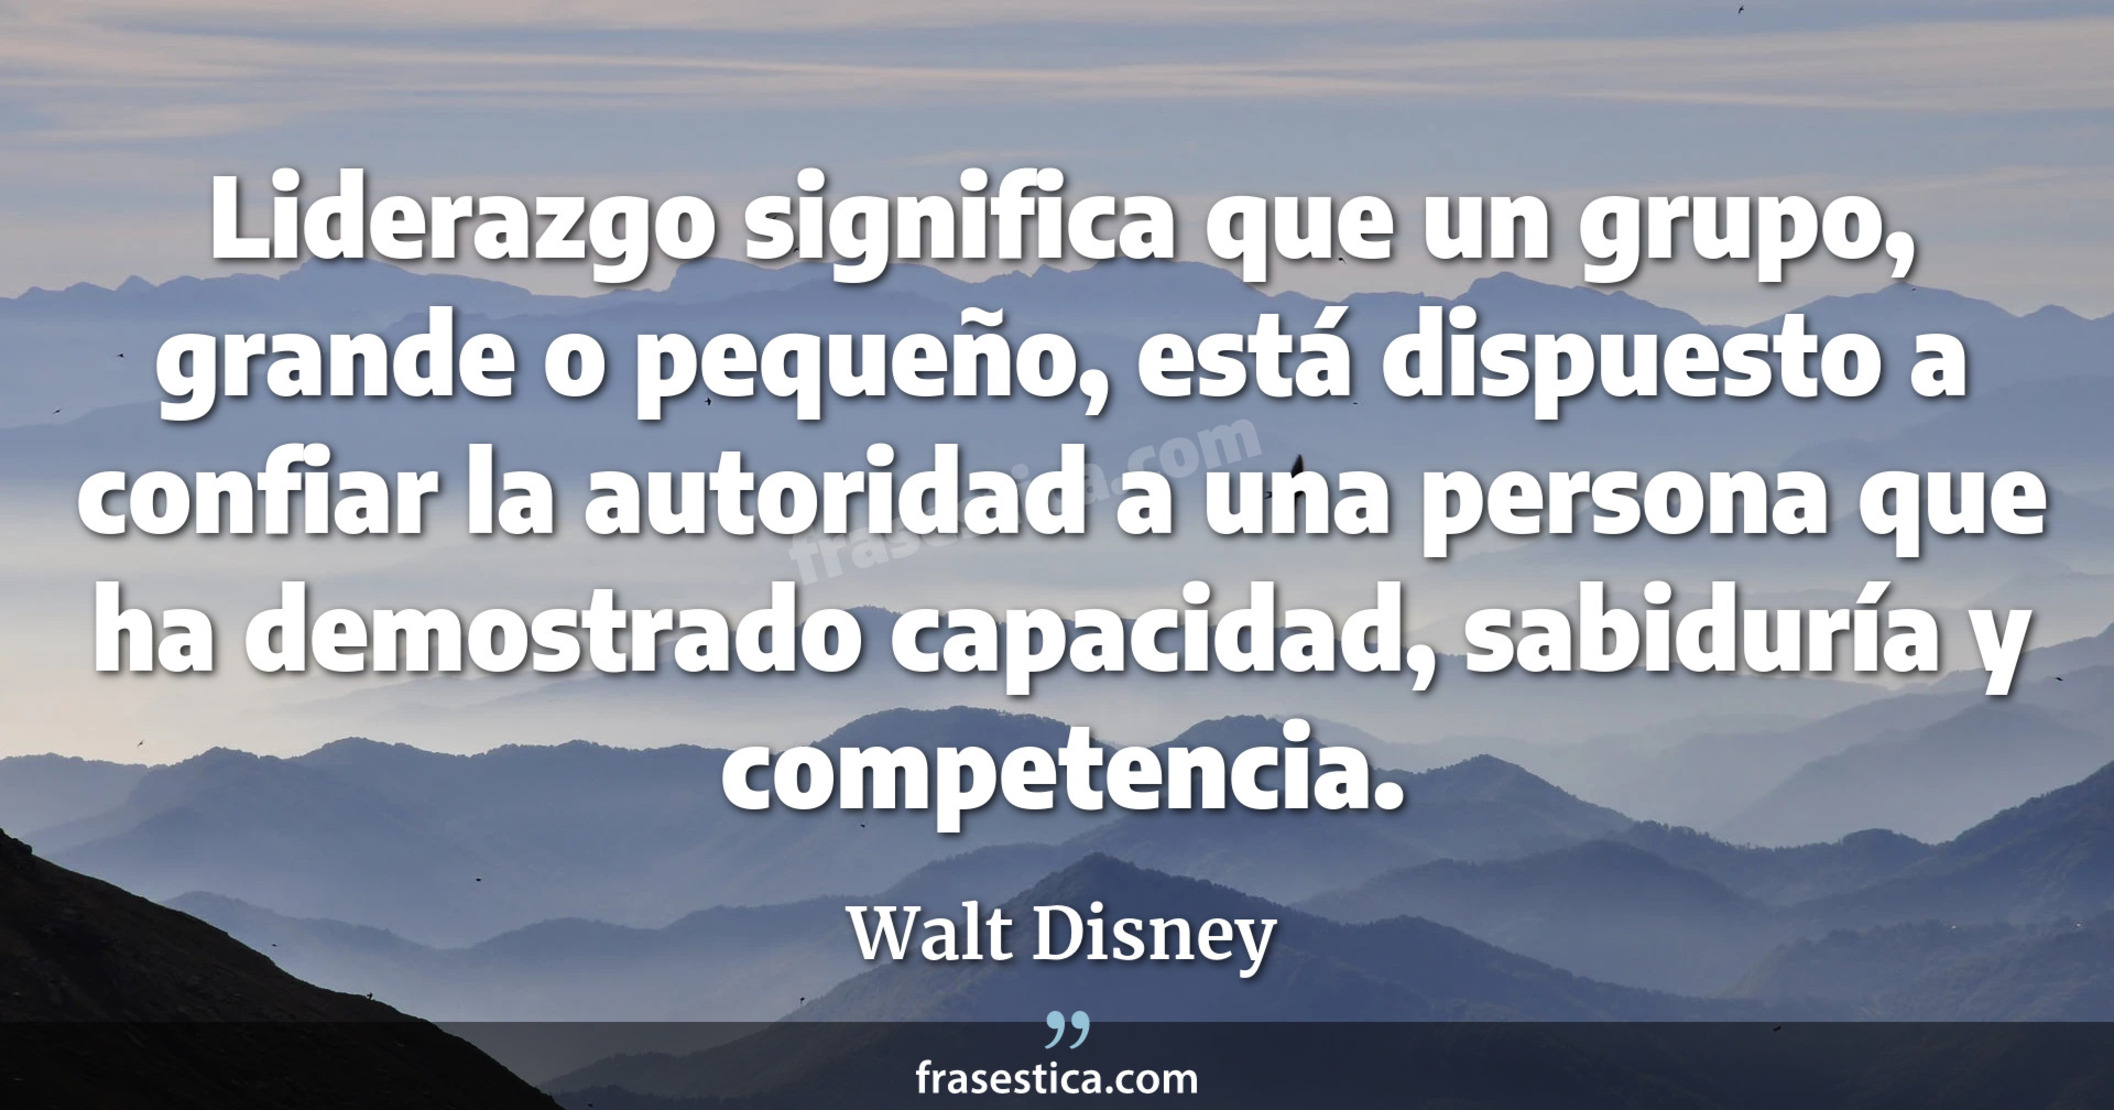 Liderazgo significa que un grupo, grande o pequeño, está dispuesto a confiar la autoridad a una persona que ha demostrado capacidad, sabiduría y competencia. - Walt Disney